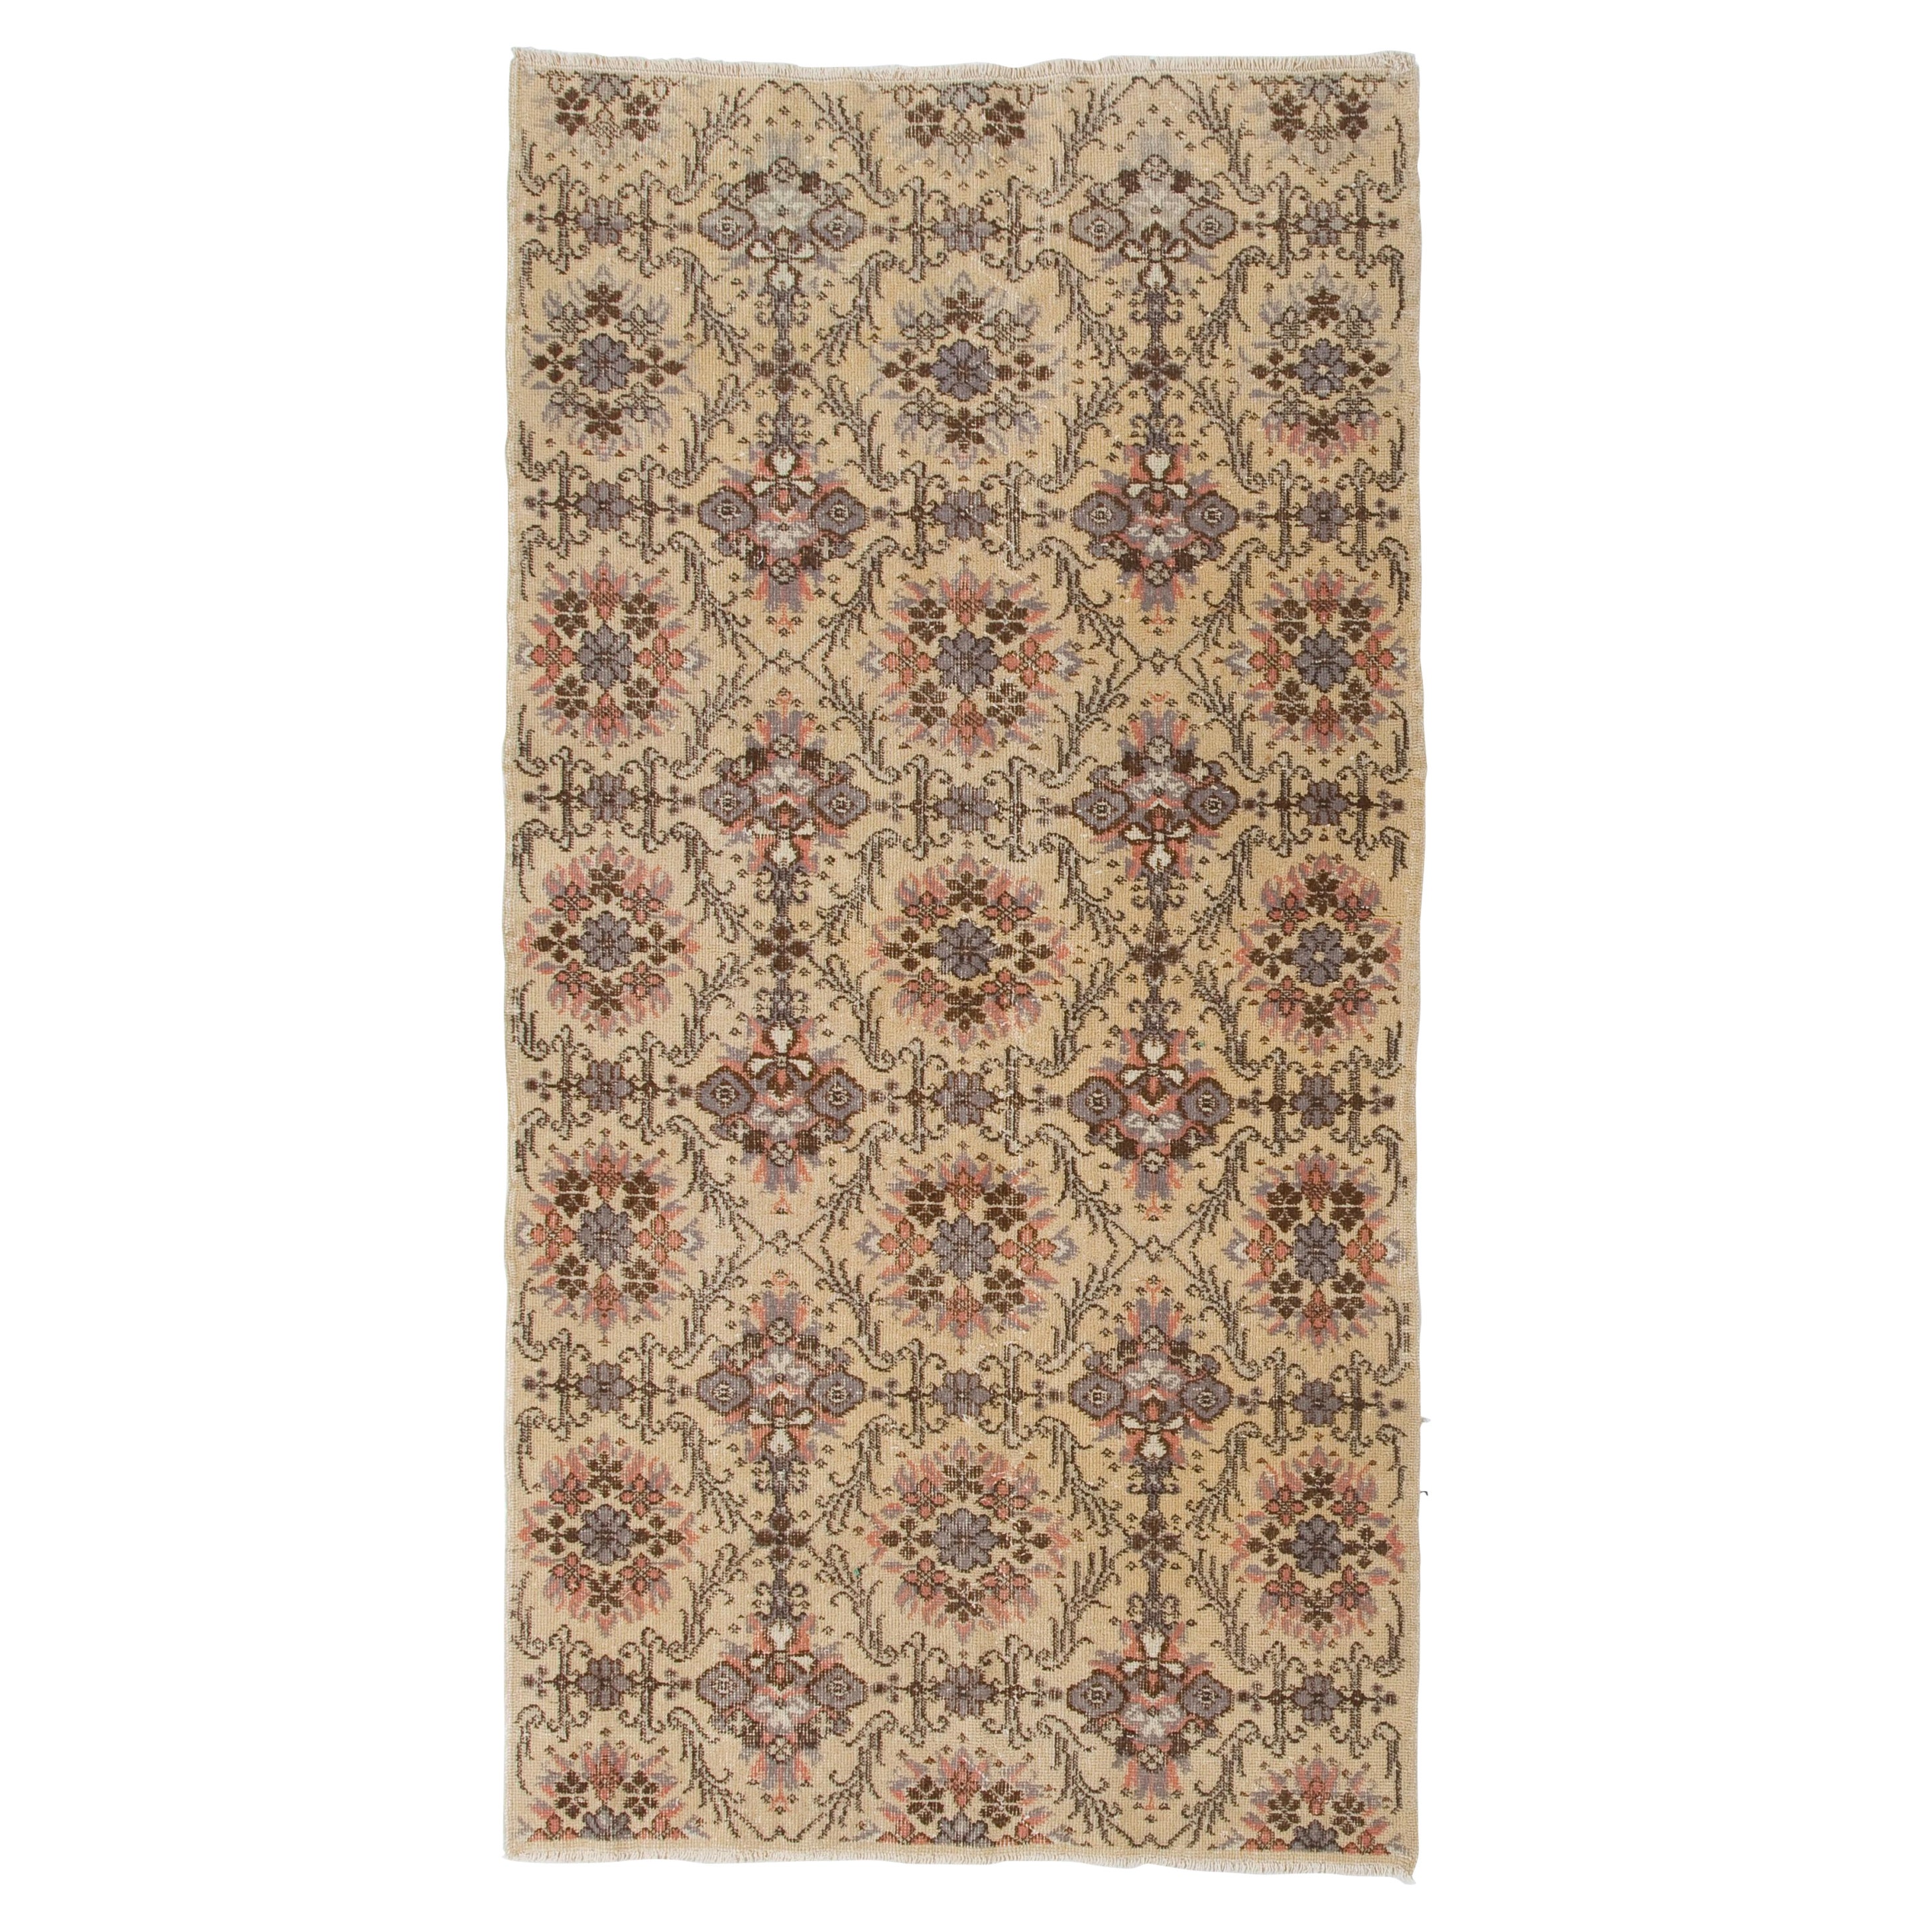 3.8x7.3 ft Hand-Knotted Vintage Floral Design Turkish Rug, Woolen Floor Covering